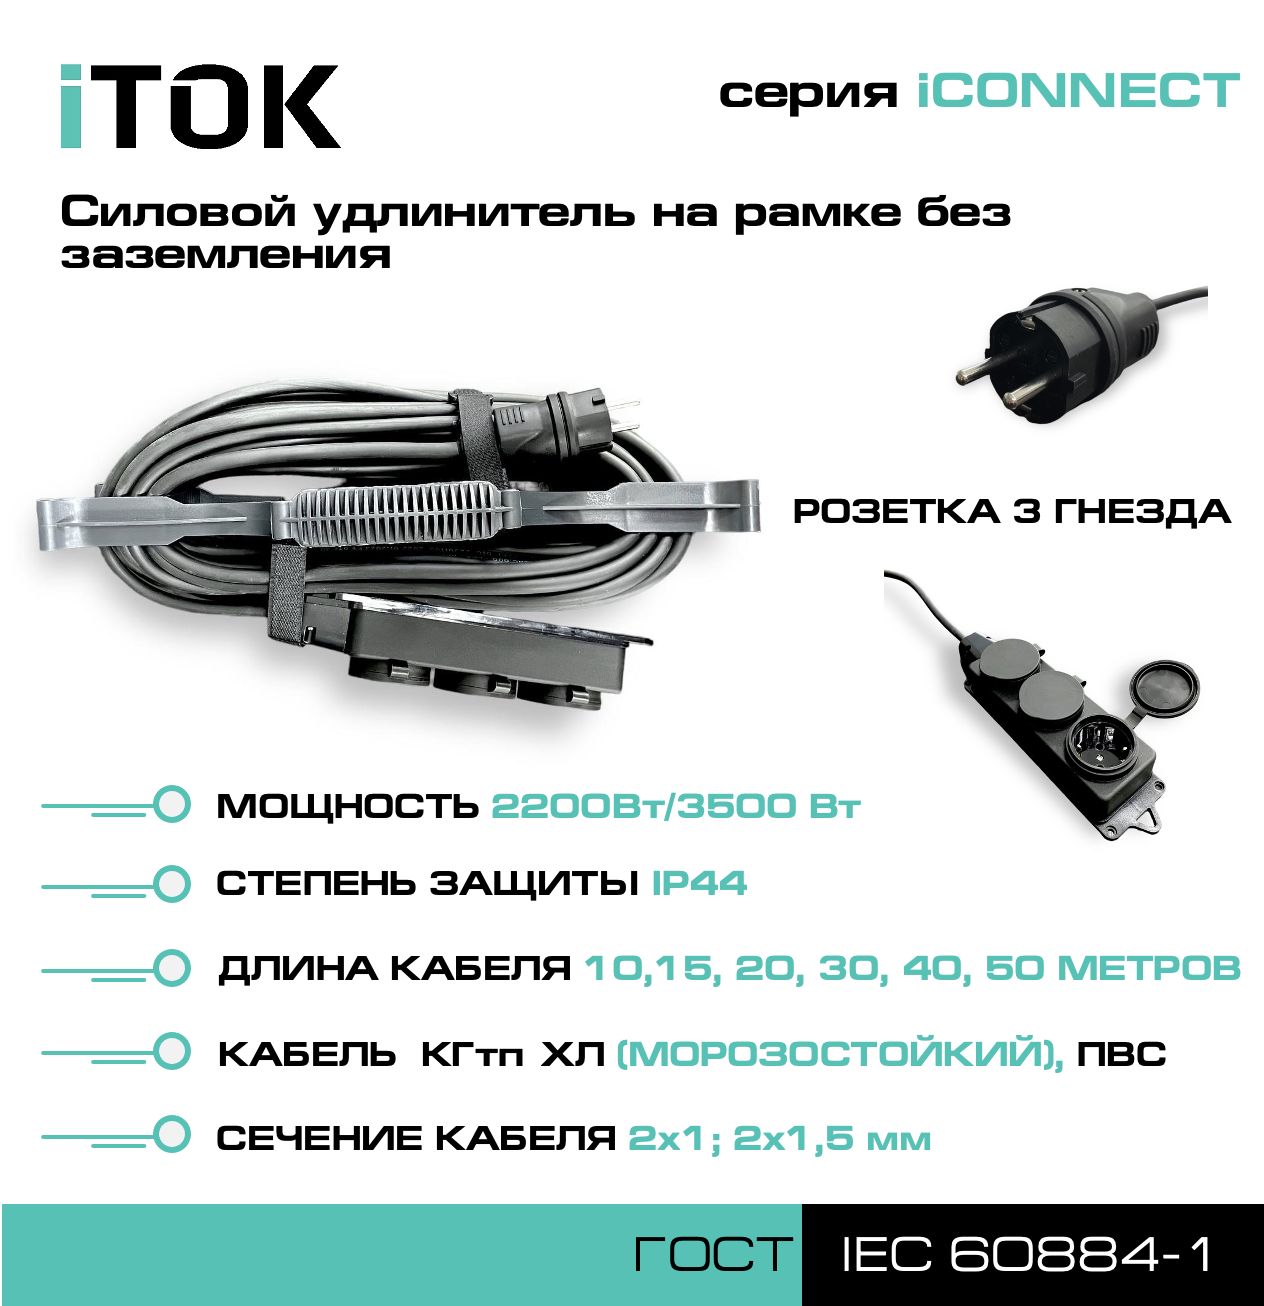 Удлинитель на рамке без земли серии iTOK iCONNECT ПВС 2х1,5 мм 3 гнезда IP44 30 м фигурный пазл в рамке